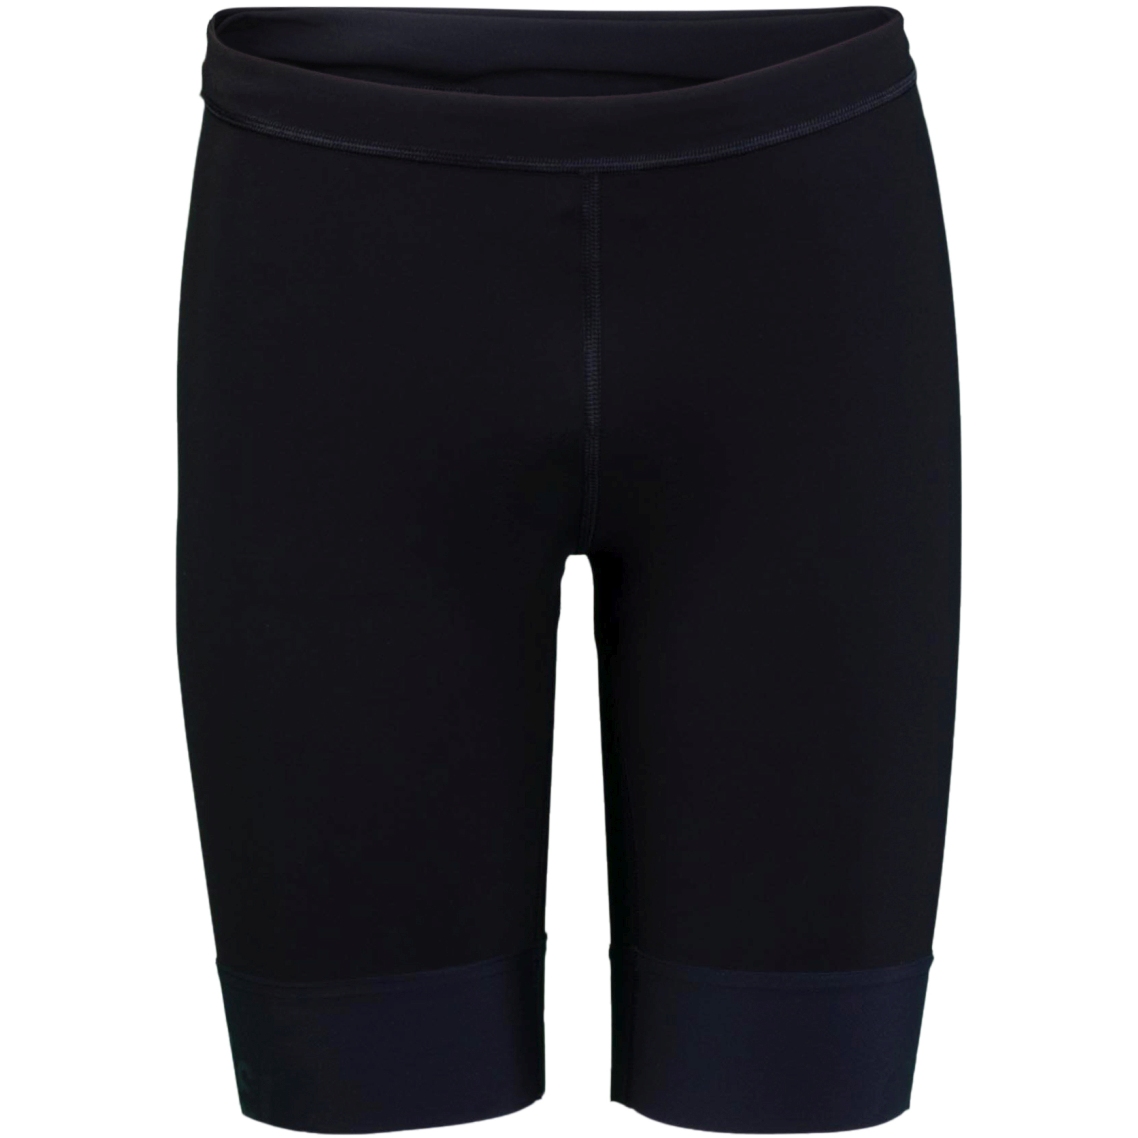 Produktbild von sailfish Herren Perform Triathlon Shorts - schwarz